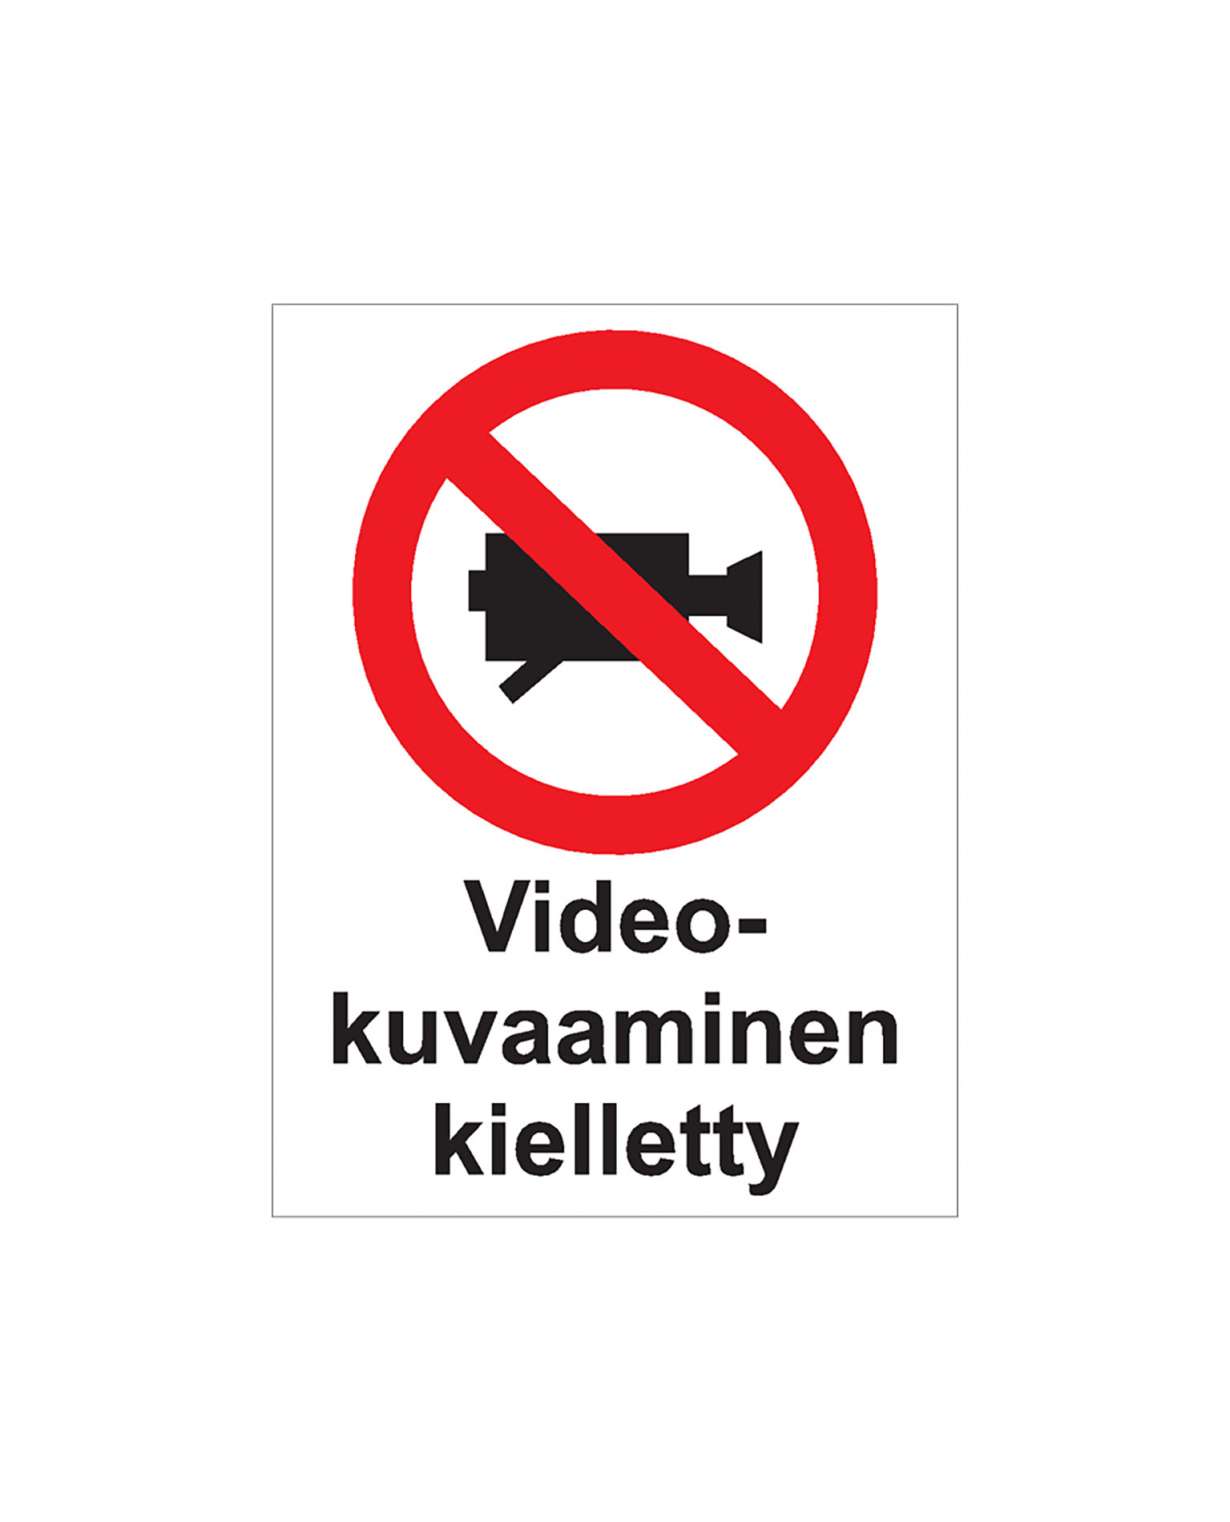 Videokuvaaminen kielletty, Ibond alumiini, 300x400 mm